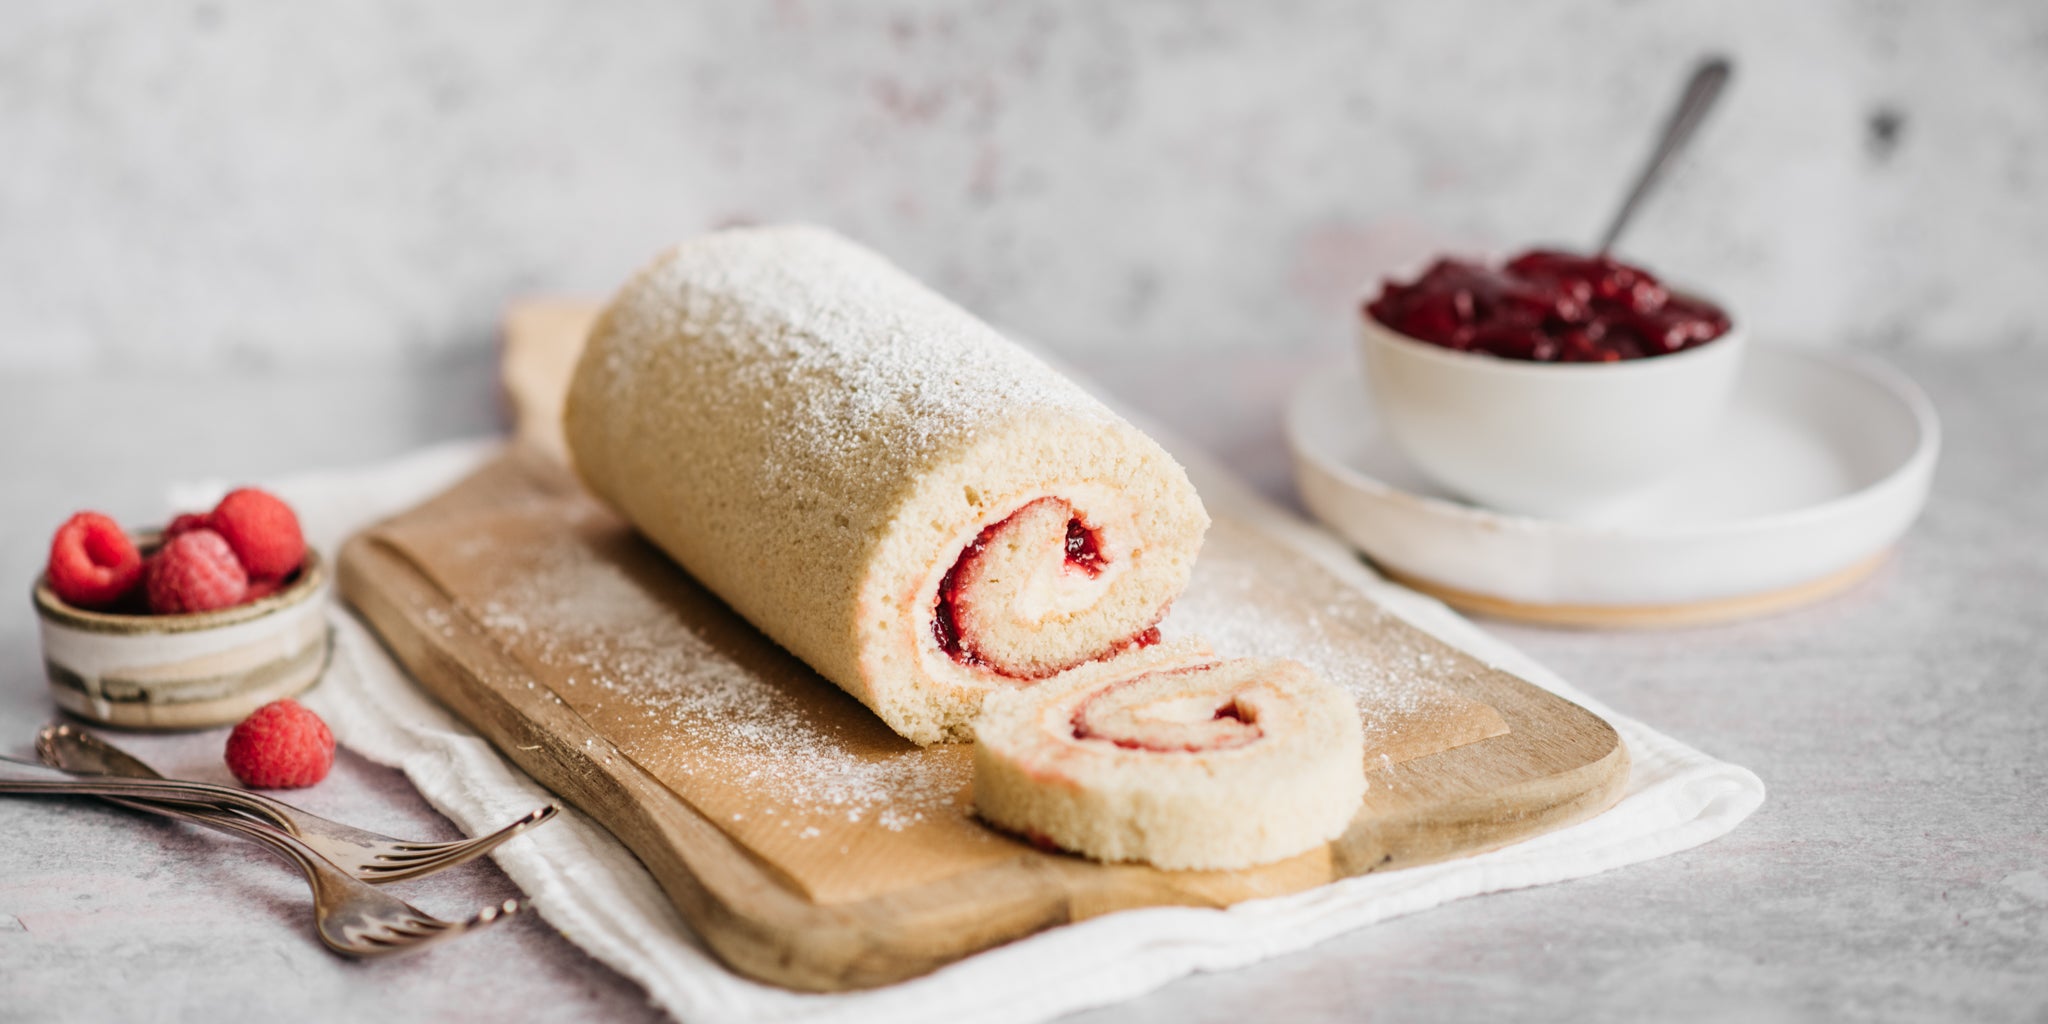 Cake roll with jam and cream (Rotolo con marmellata e panna)